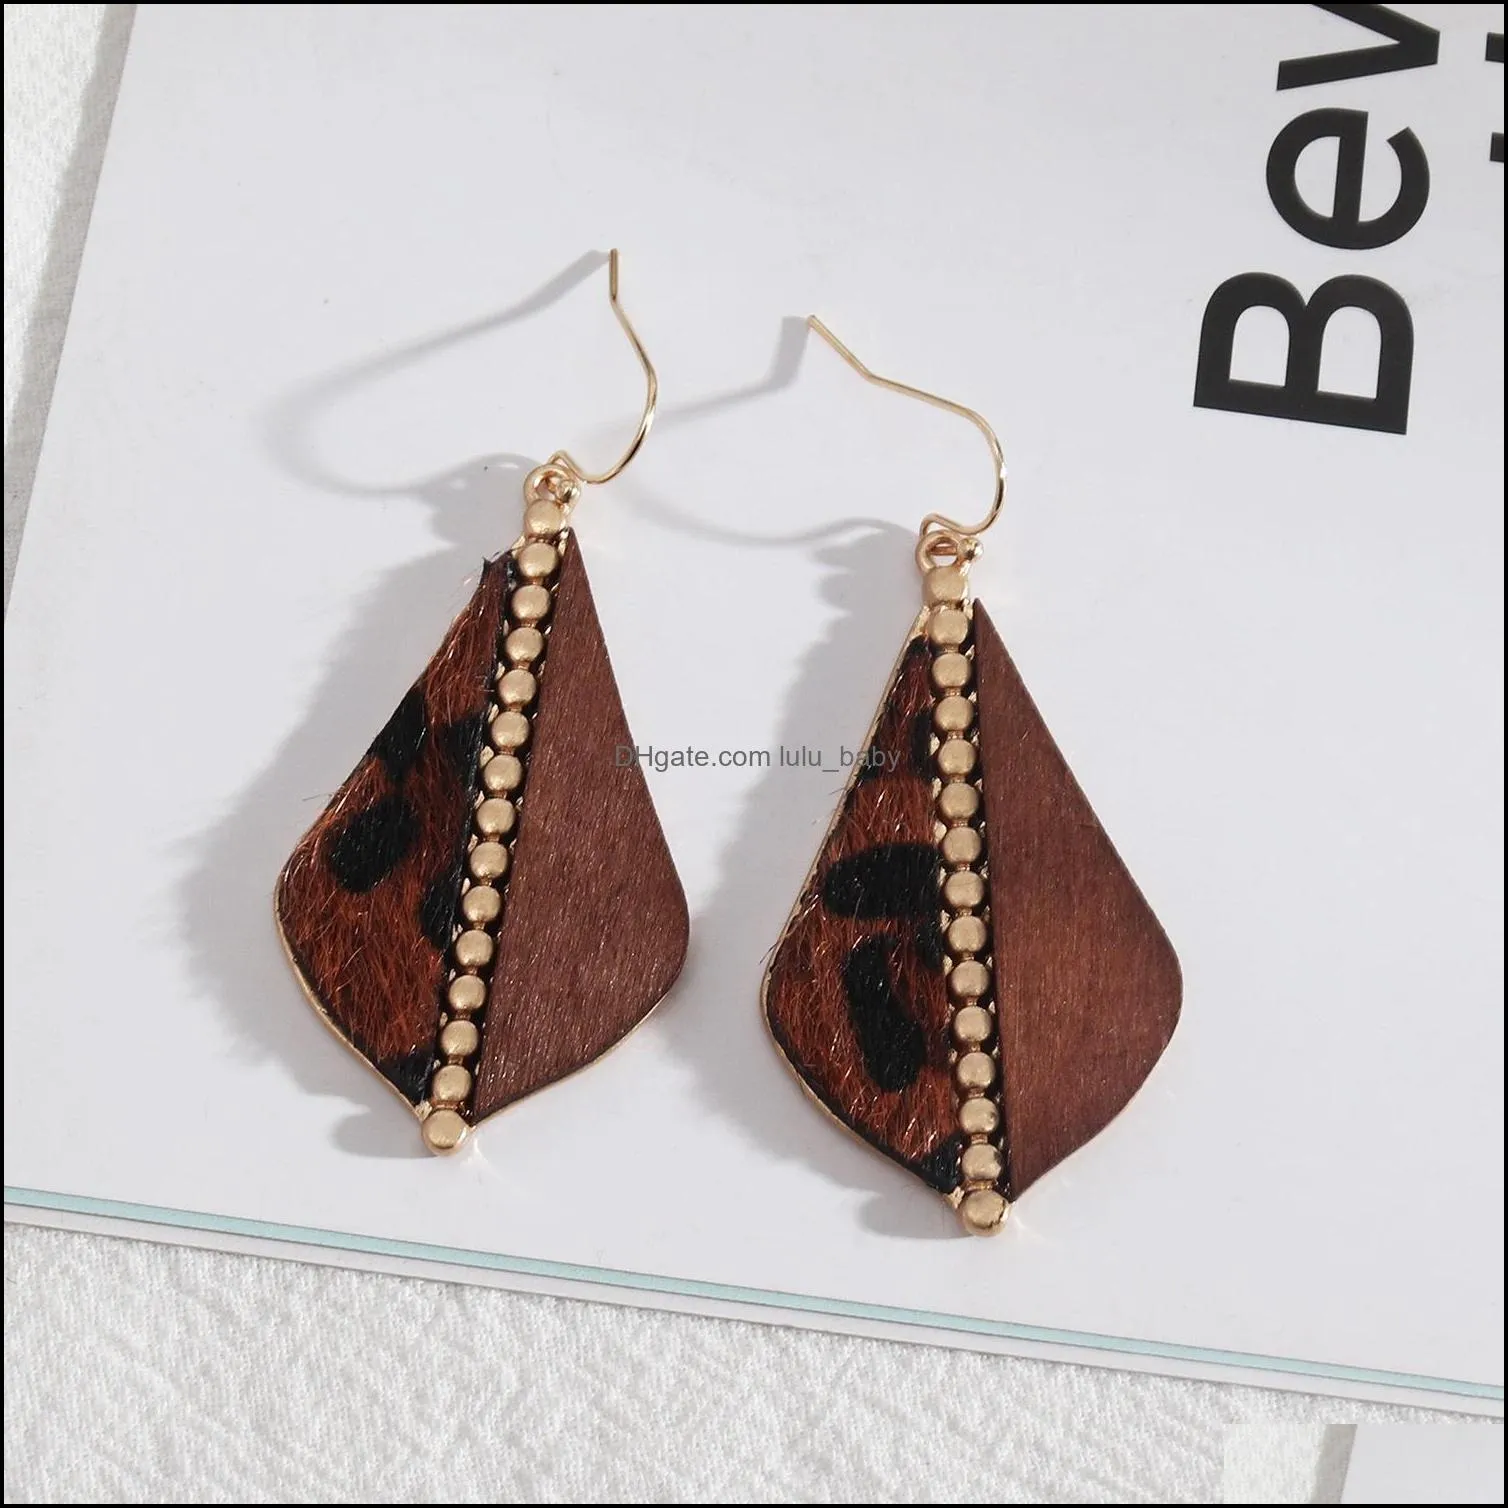 teardrop frame inspired splicing woood leopard print pu leather charms earrings geometric women jewelry